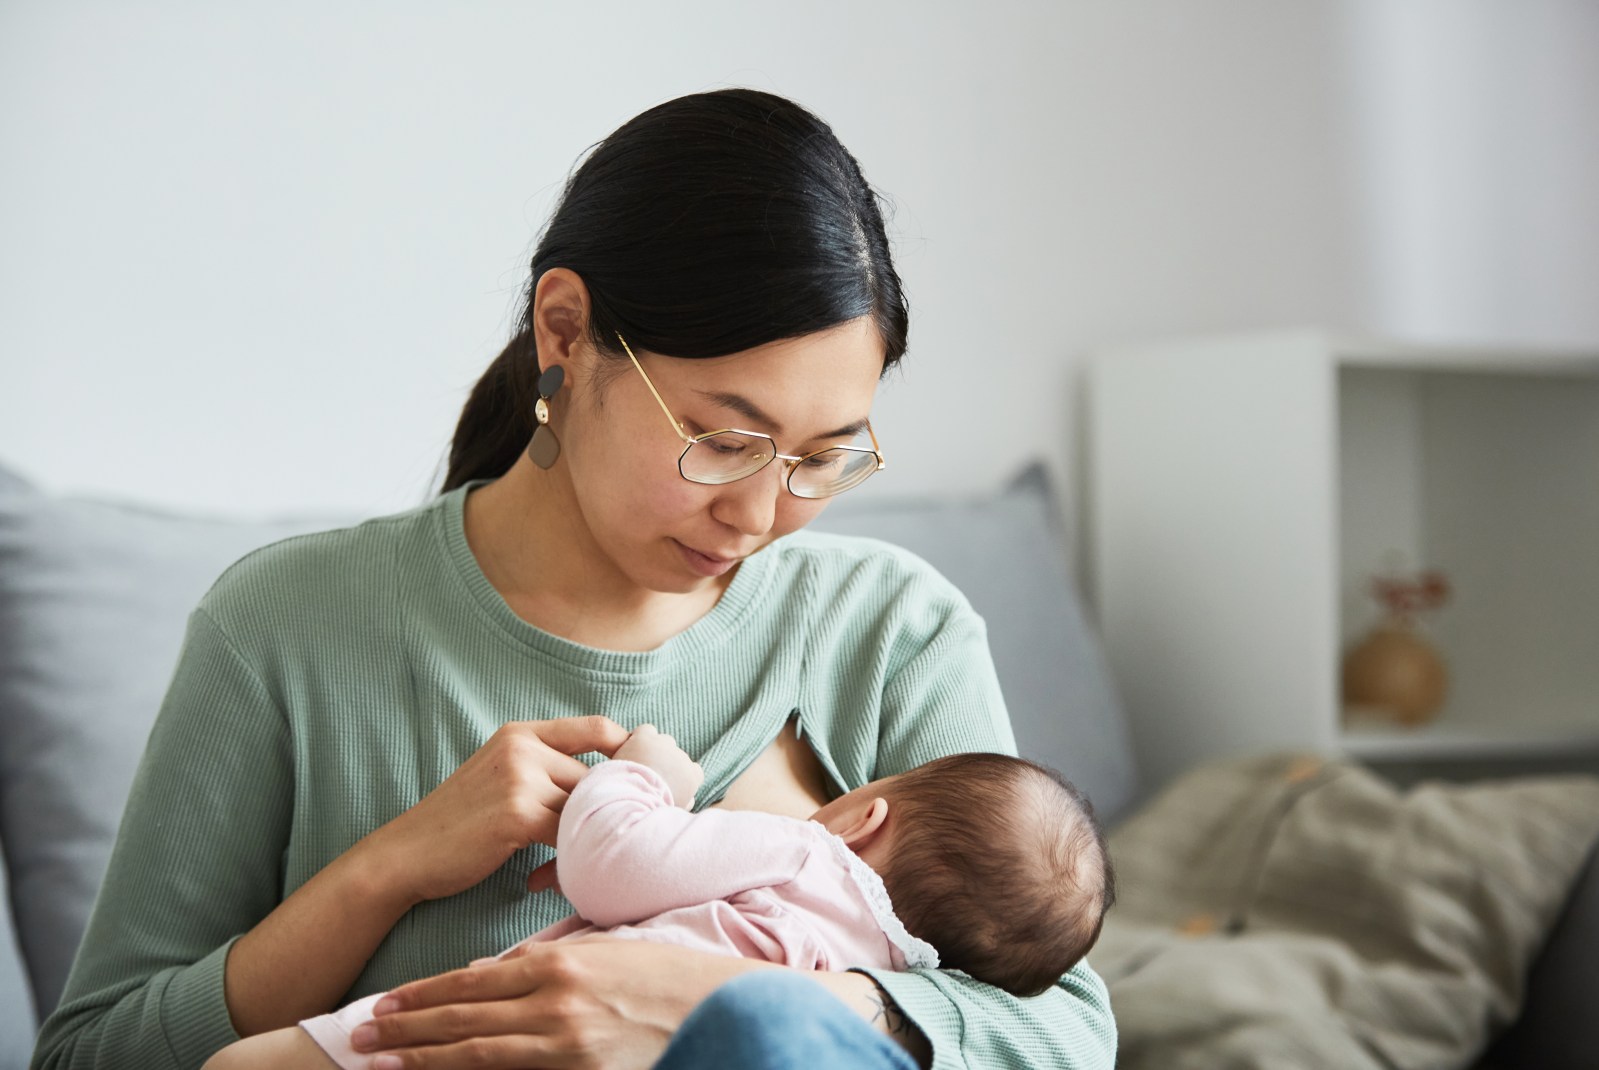 madre asiatica mirando y amamantando a su bebe